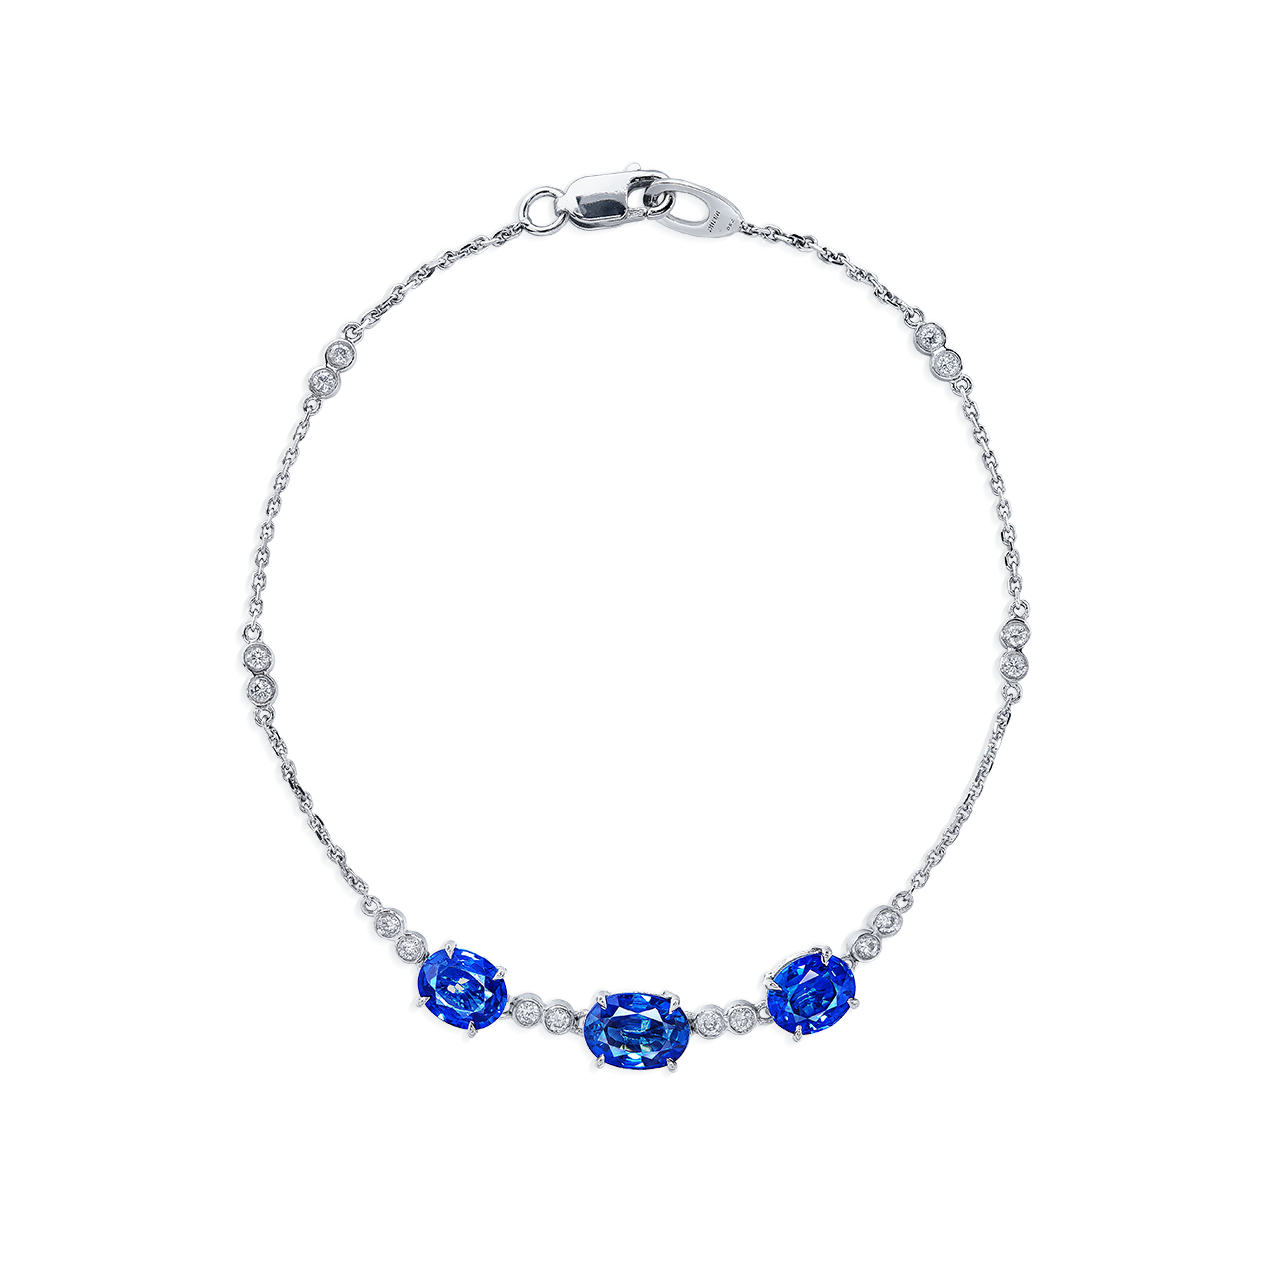 2.78克拉 緬甸藍寶鑽石手鍊
Burma Sapphire and Diamond Bracelet